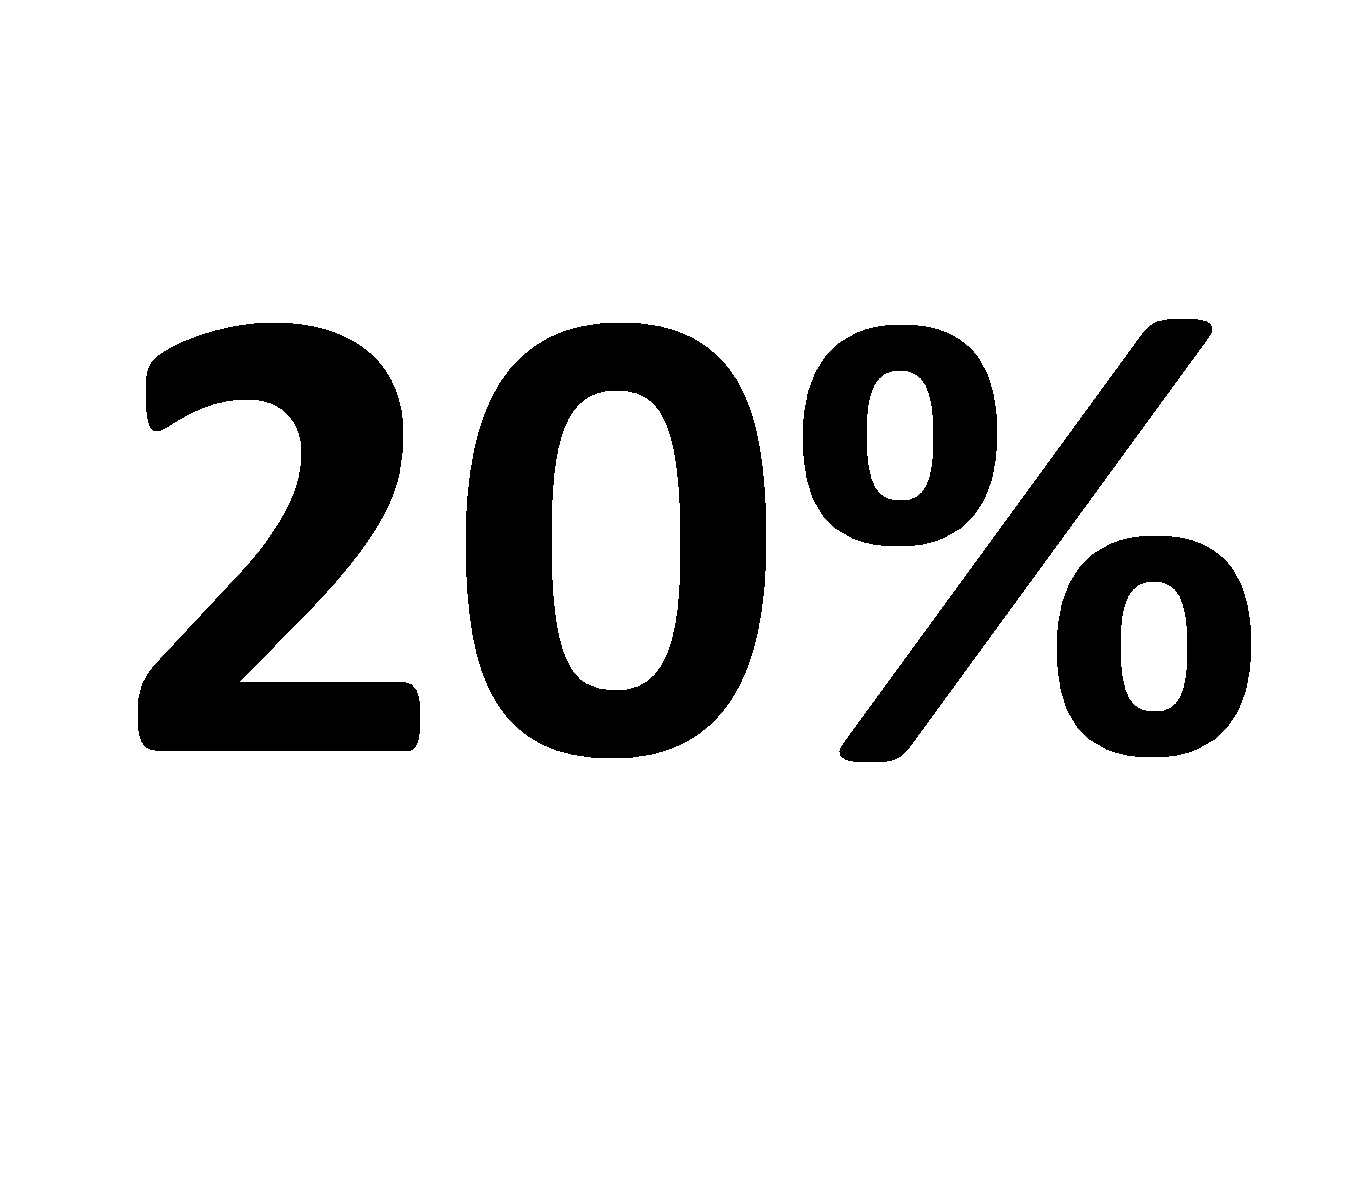 Save 20%